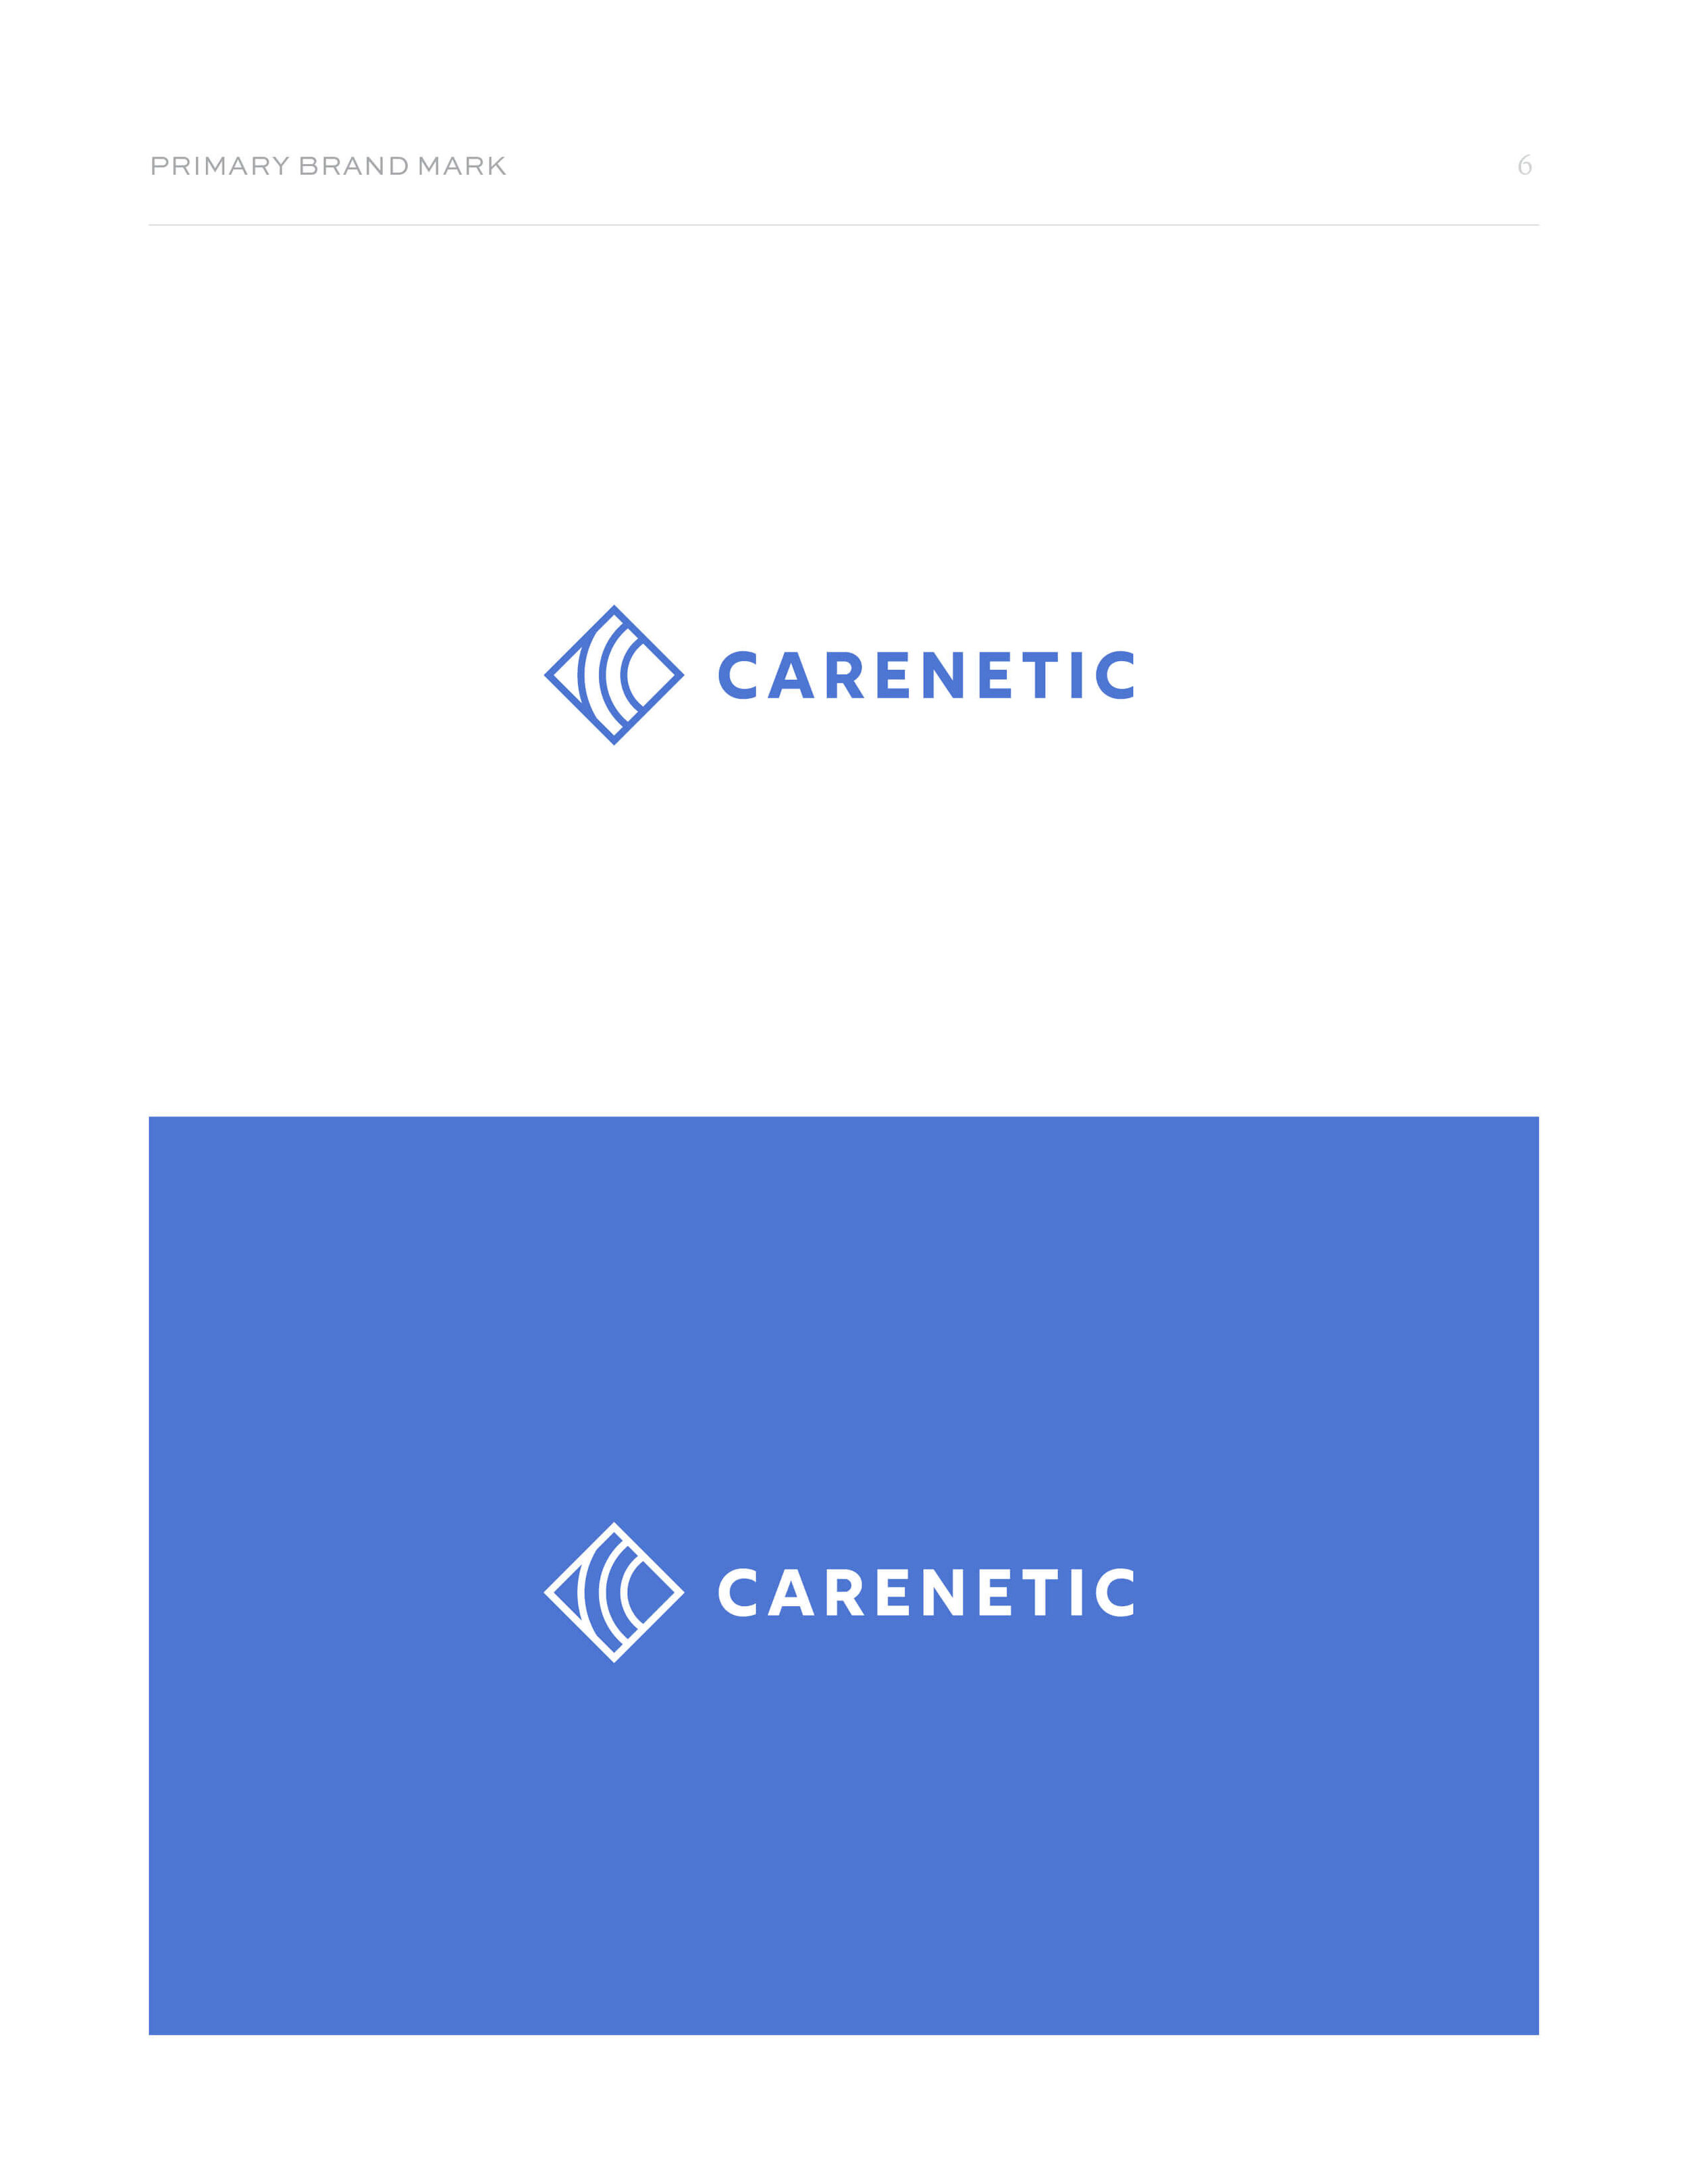 carenetic-brand-design-6.jpg